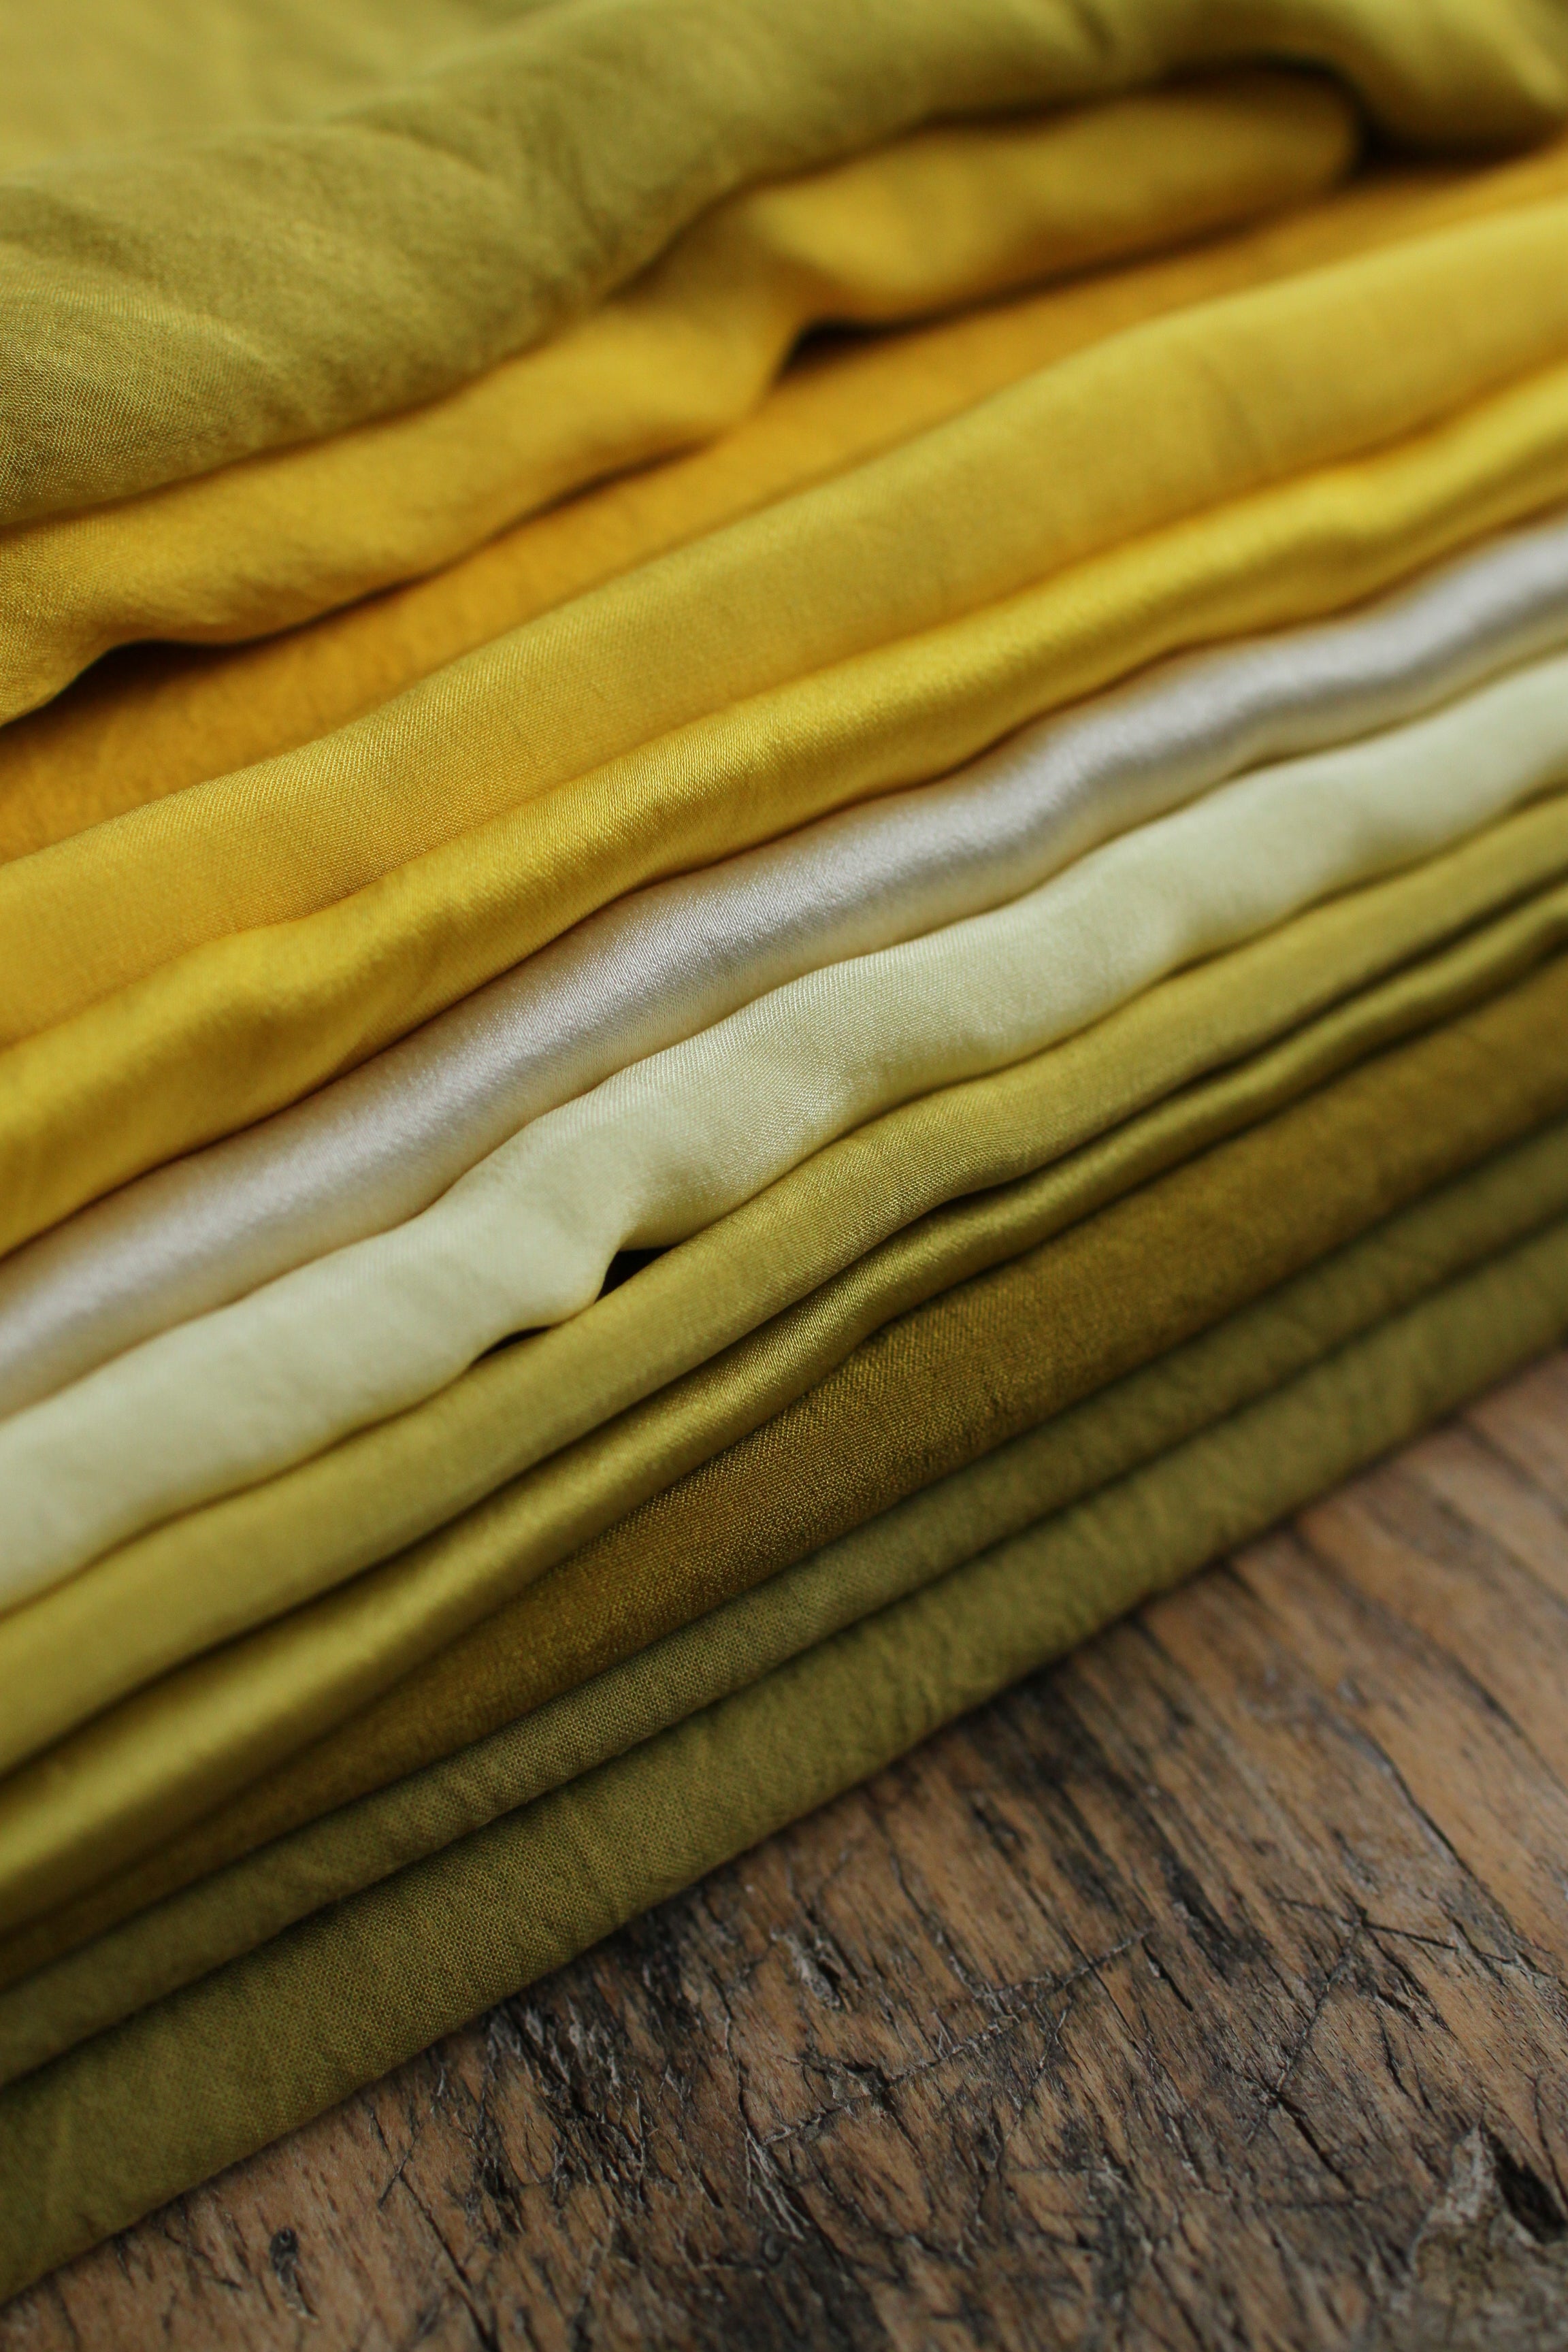 Ruban en mousseline de soie - couleur "soleil" - largeur 5cm, longueur 1,15m